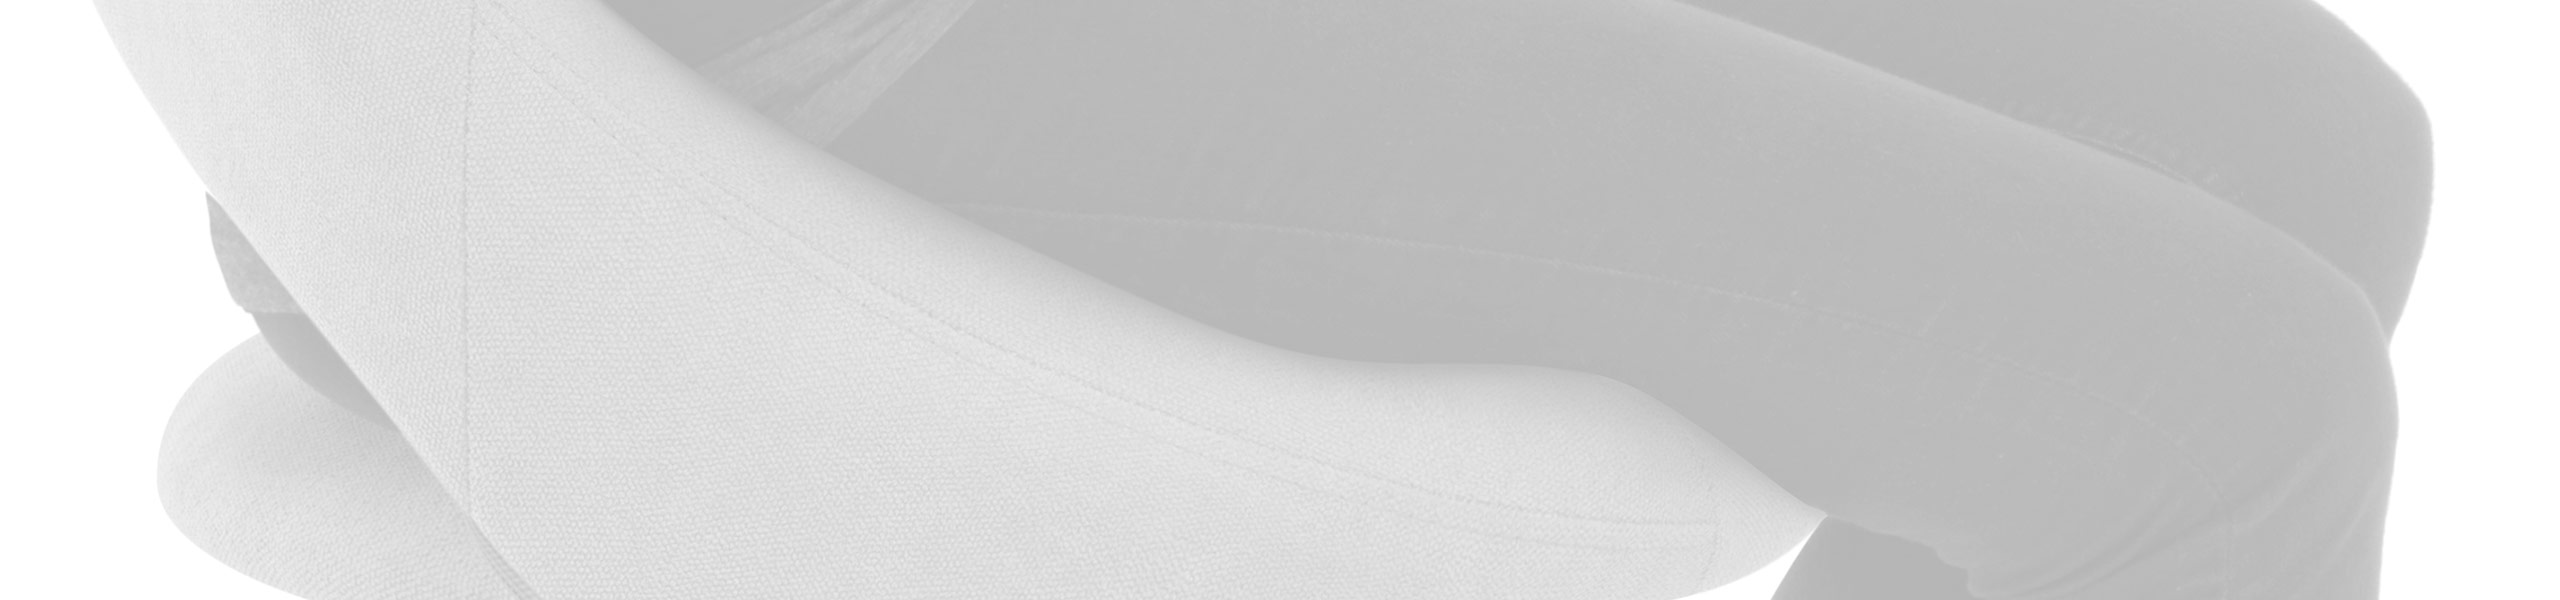 Nikki Bar Stool Light Grey Fabric Review Banner